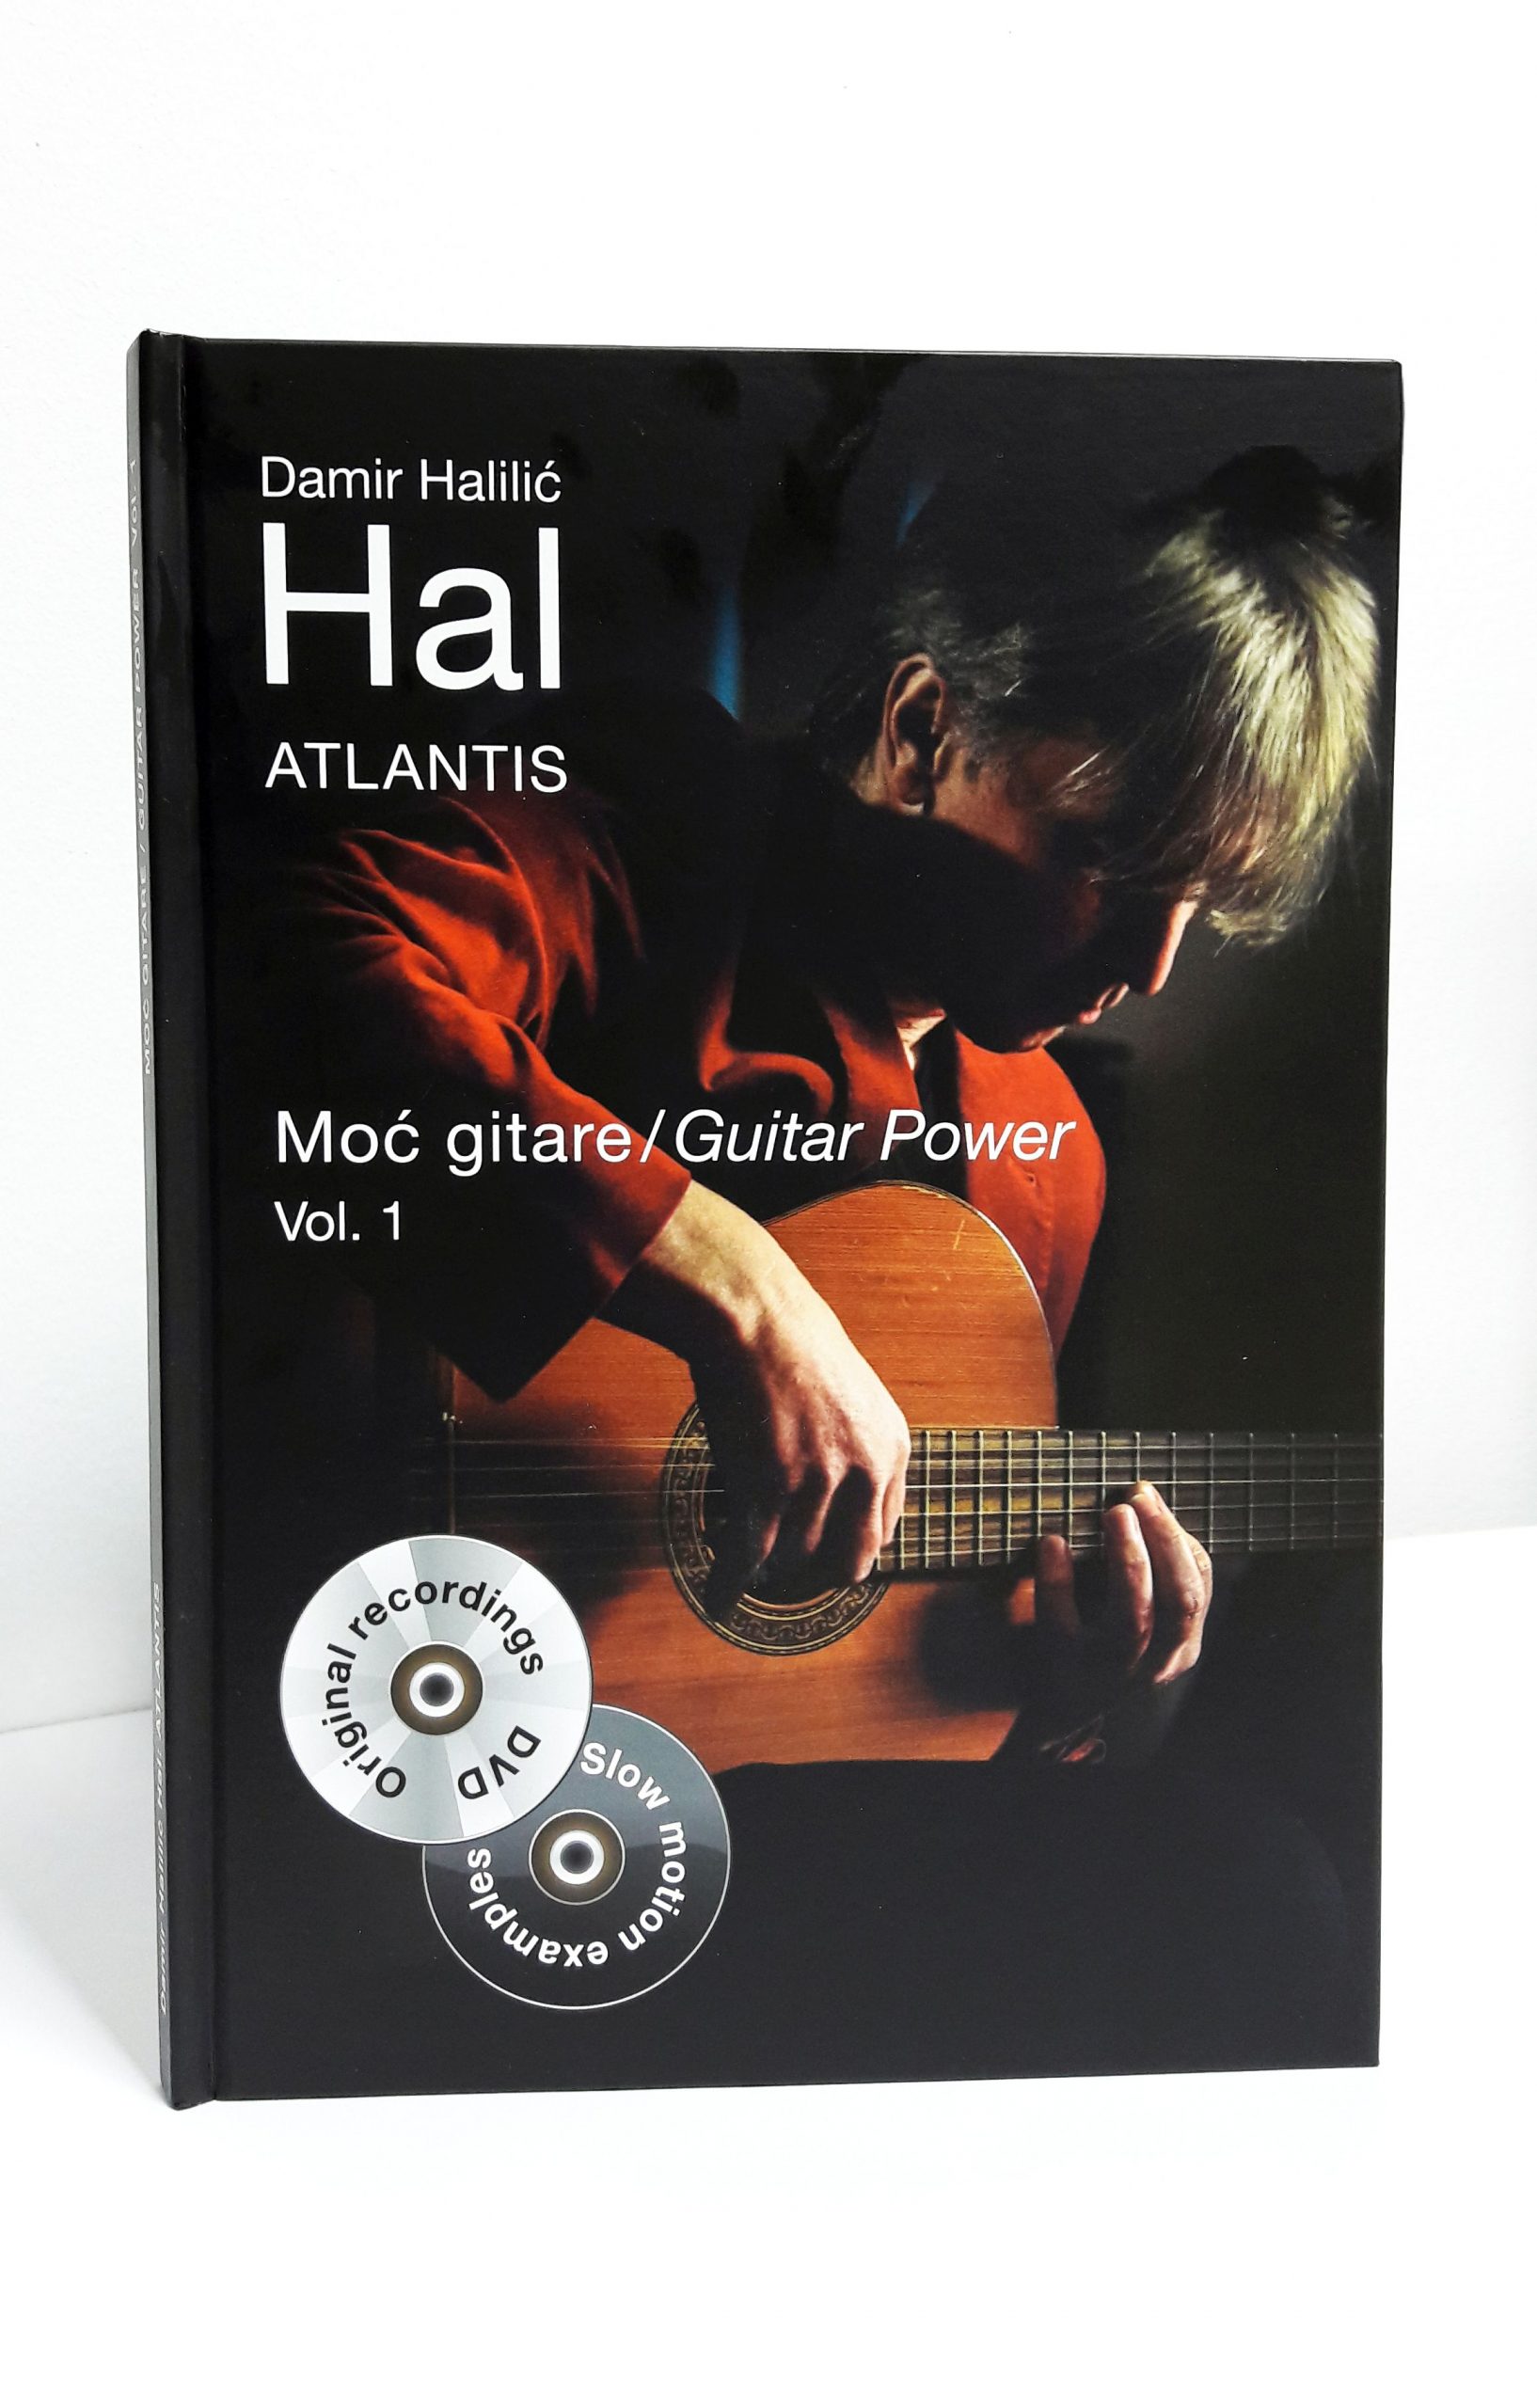 Trenutno pregledavate Gitaristički virtuoz i skladatelj Damir Halilić HAL objavio je luksuzno izdanje za sve gitariste! Knjigu s notnim zapisom+2 DVDa ‘Atlantis’